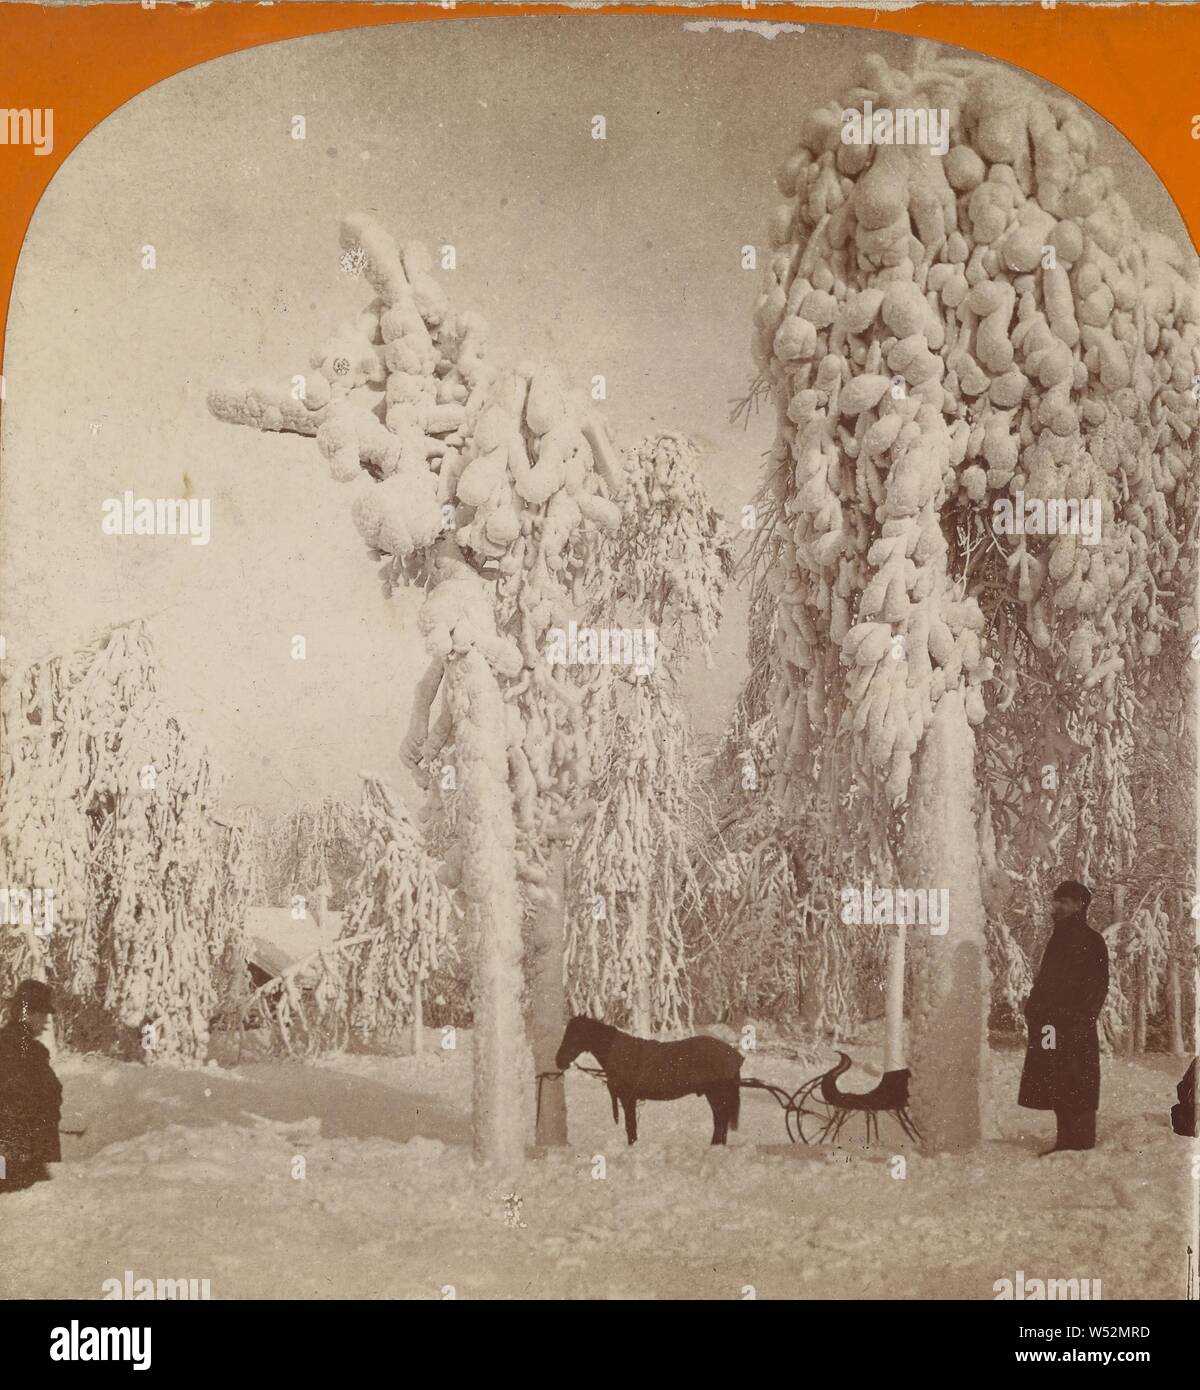 Un escenario inigualable (Prospect Park), Niagara Falls, N.Y., EE.UU., B. L. Singley (American, 1864), 1893, albúmina imprimir plata Foto de stock